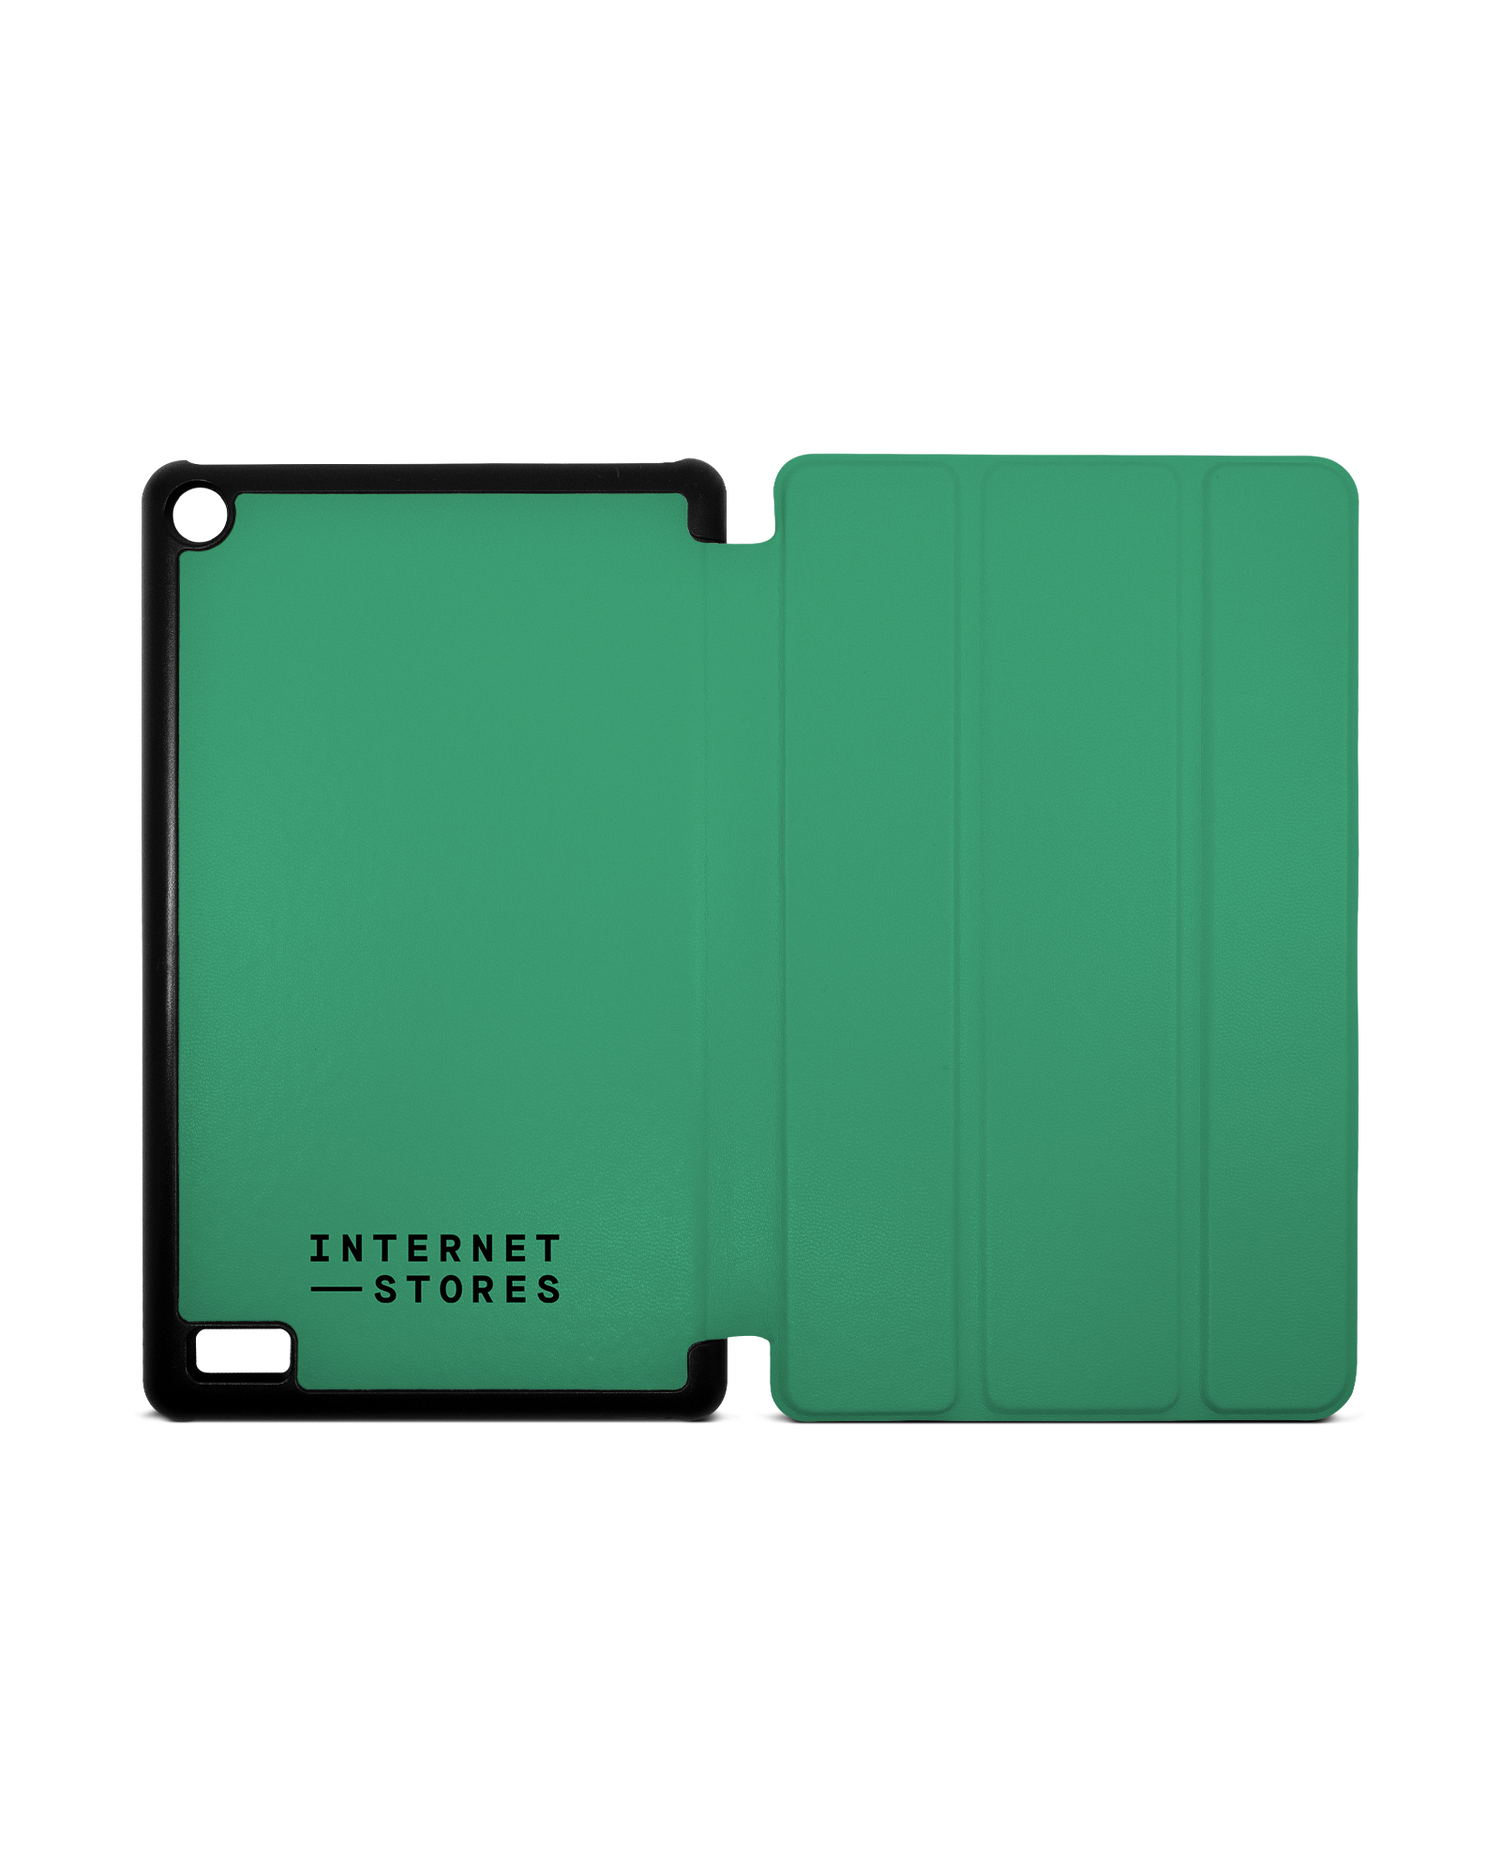 ISG Neon Green Tablet Smart Case für Amazon Fire 7: Aufgeklappt